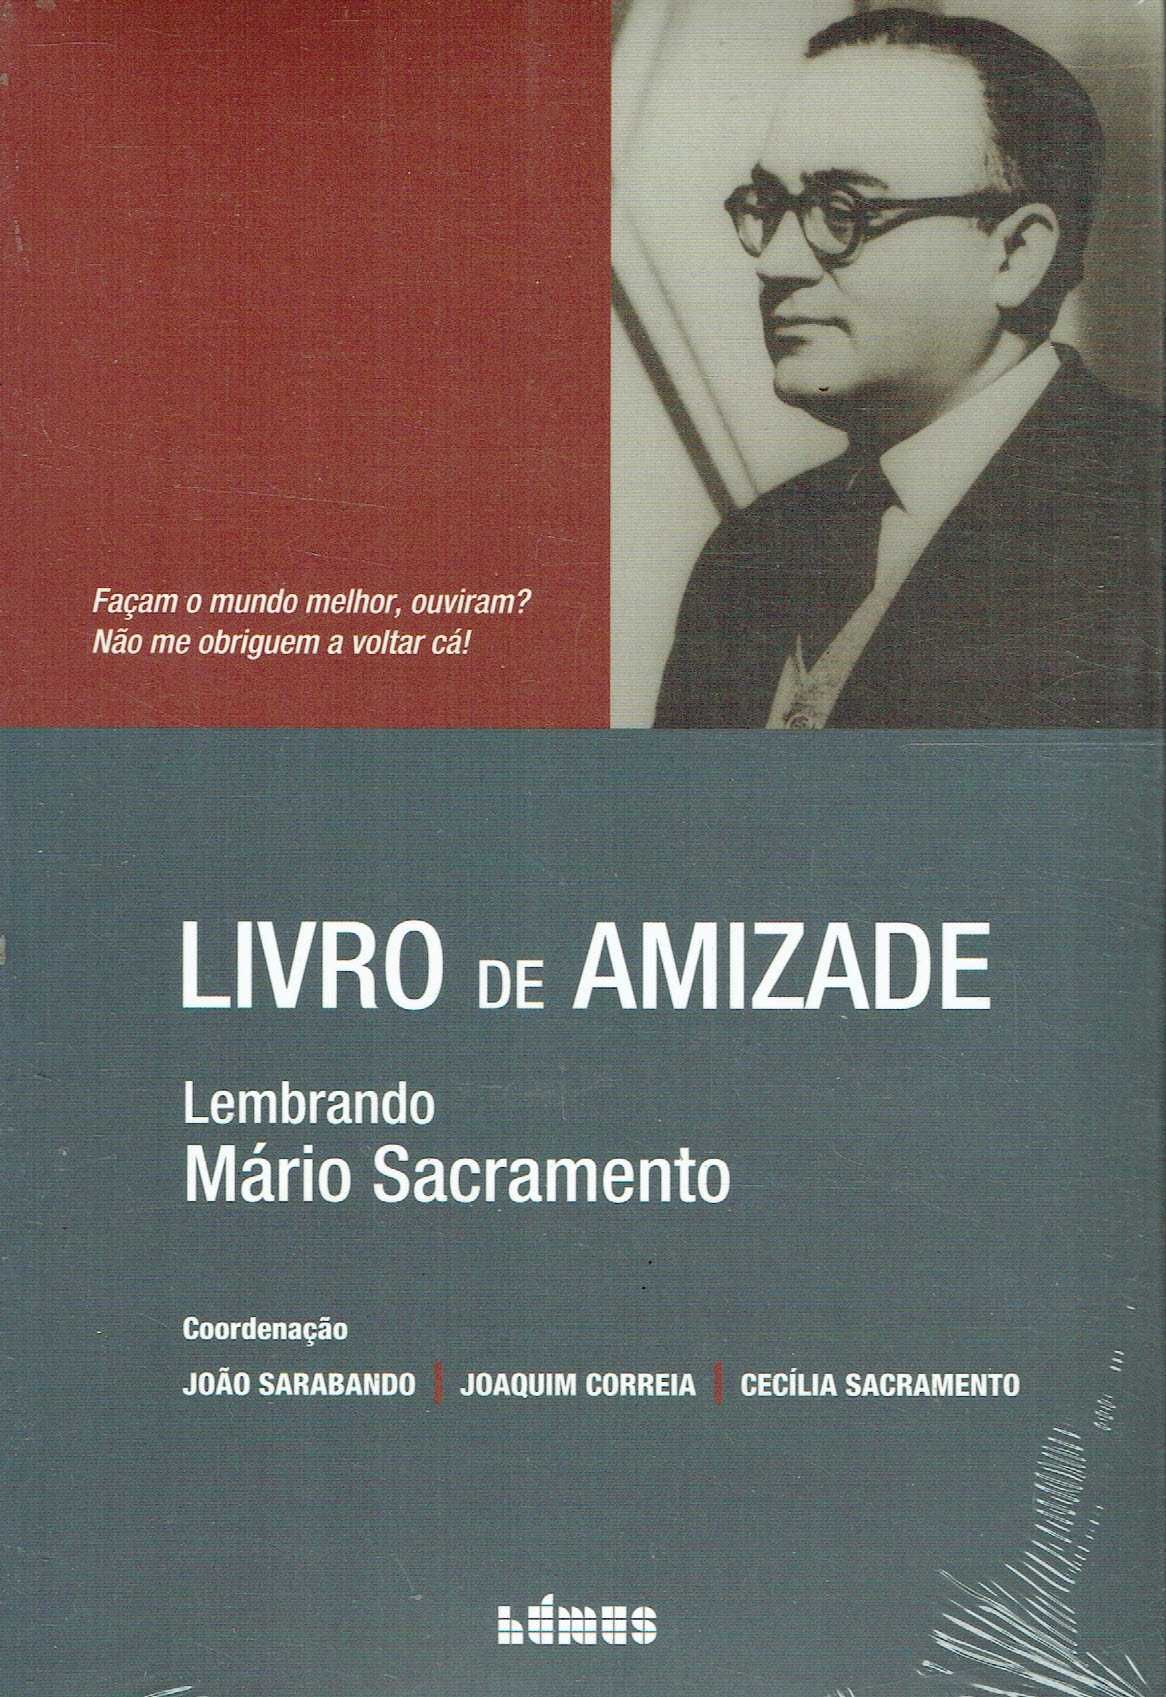 14387

Livro da Amizade
Lembrando Mário Sacramento
de João Sarabando